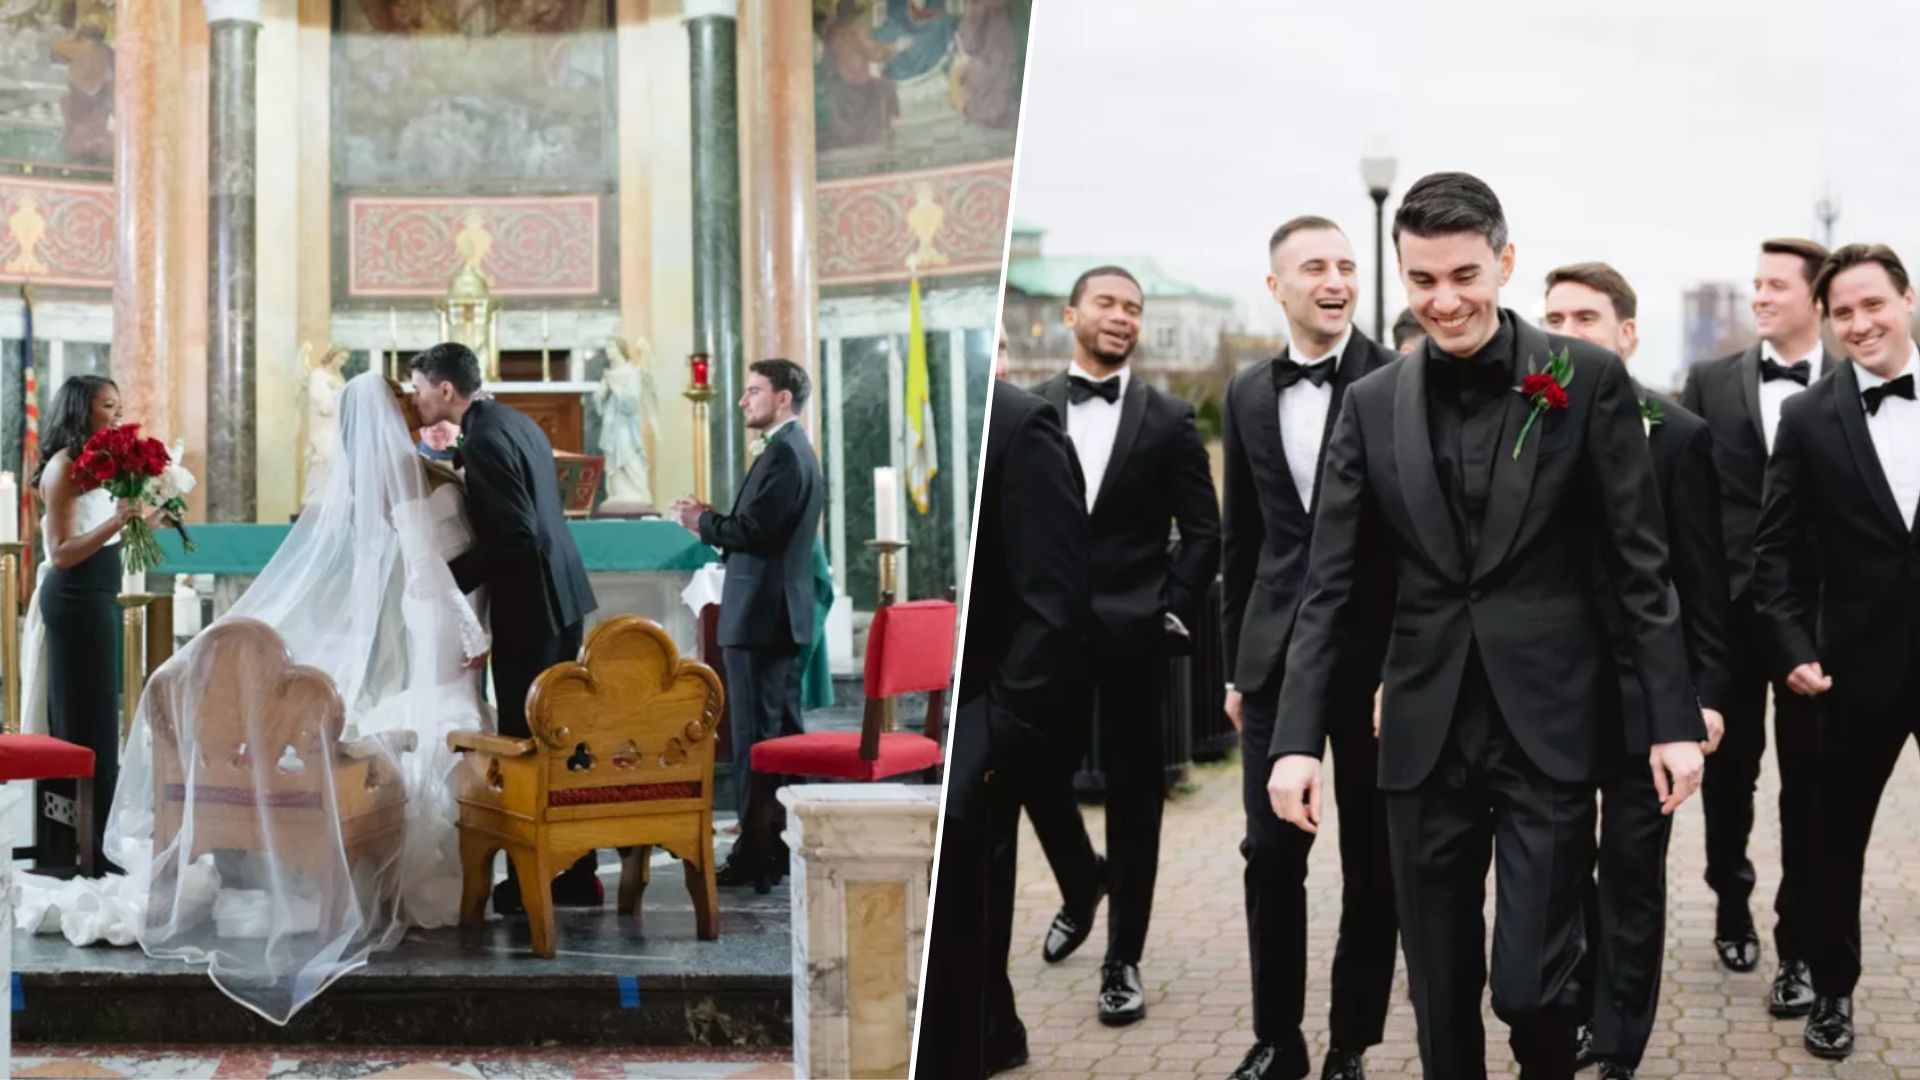 Свадьба в стиле Великого Гэтсби - фото с роскошного и мрачного празднования